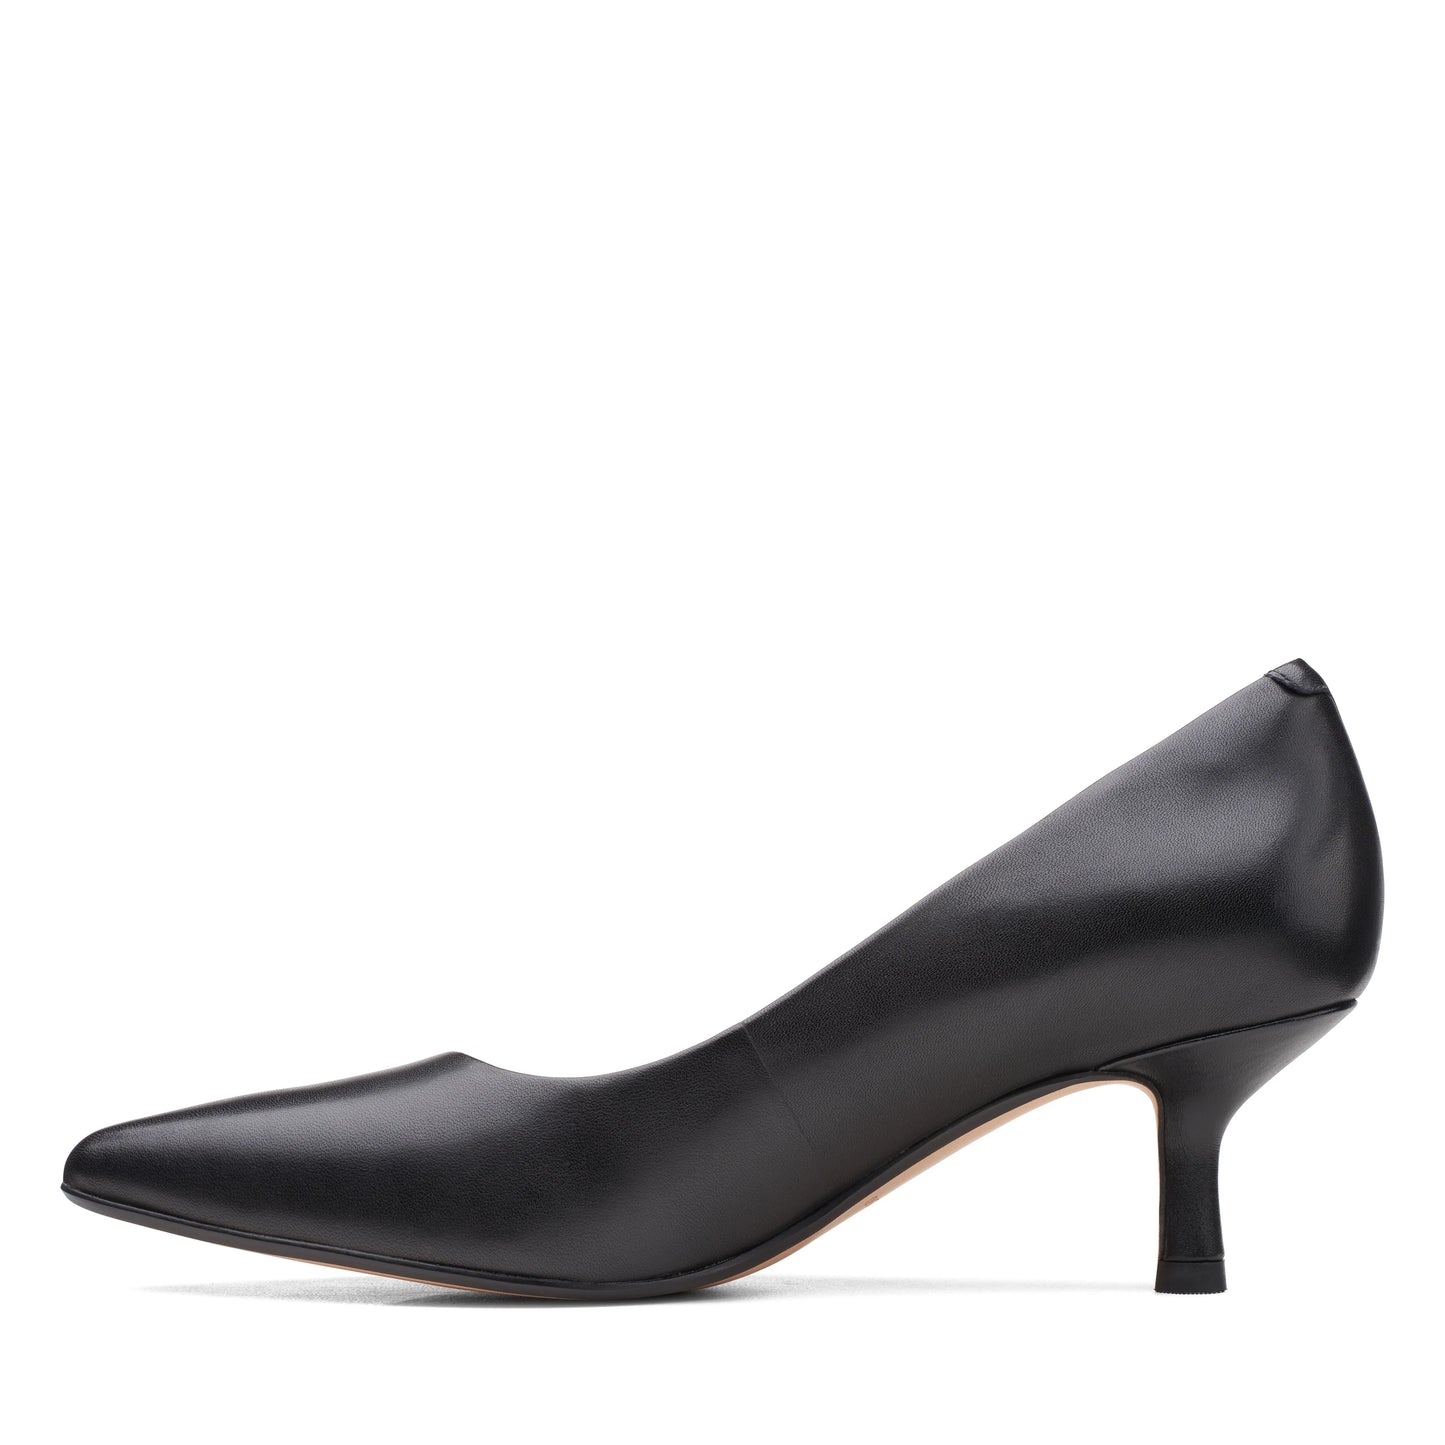 Zapatos De Tacón De La Marca Clarks Para Mujer Modelo Violet Rae Black Leather En Color Negro